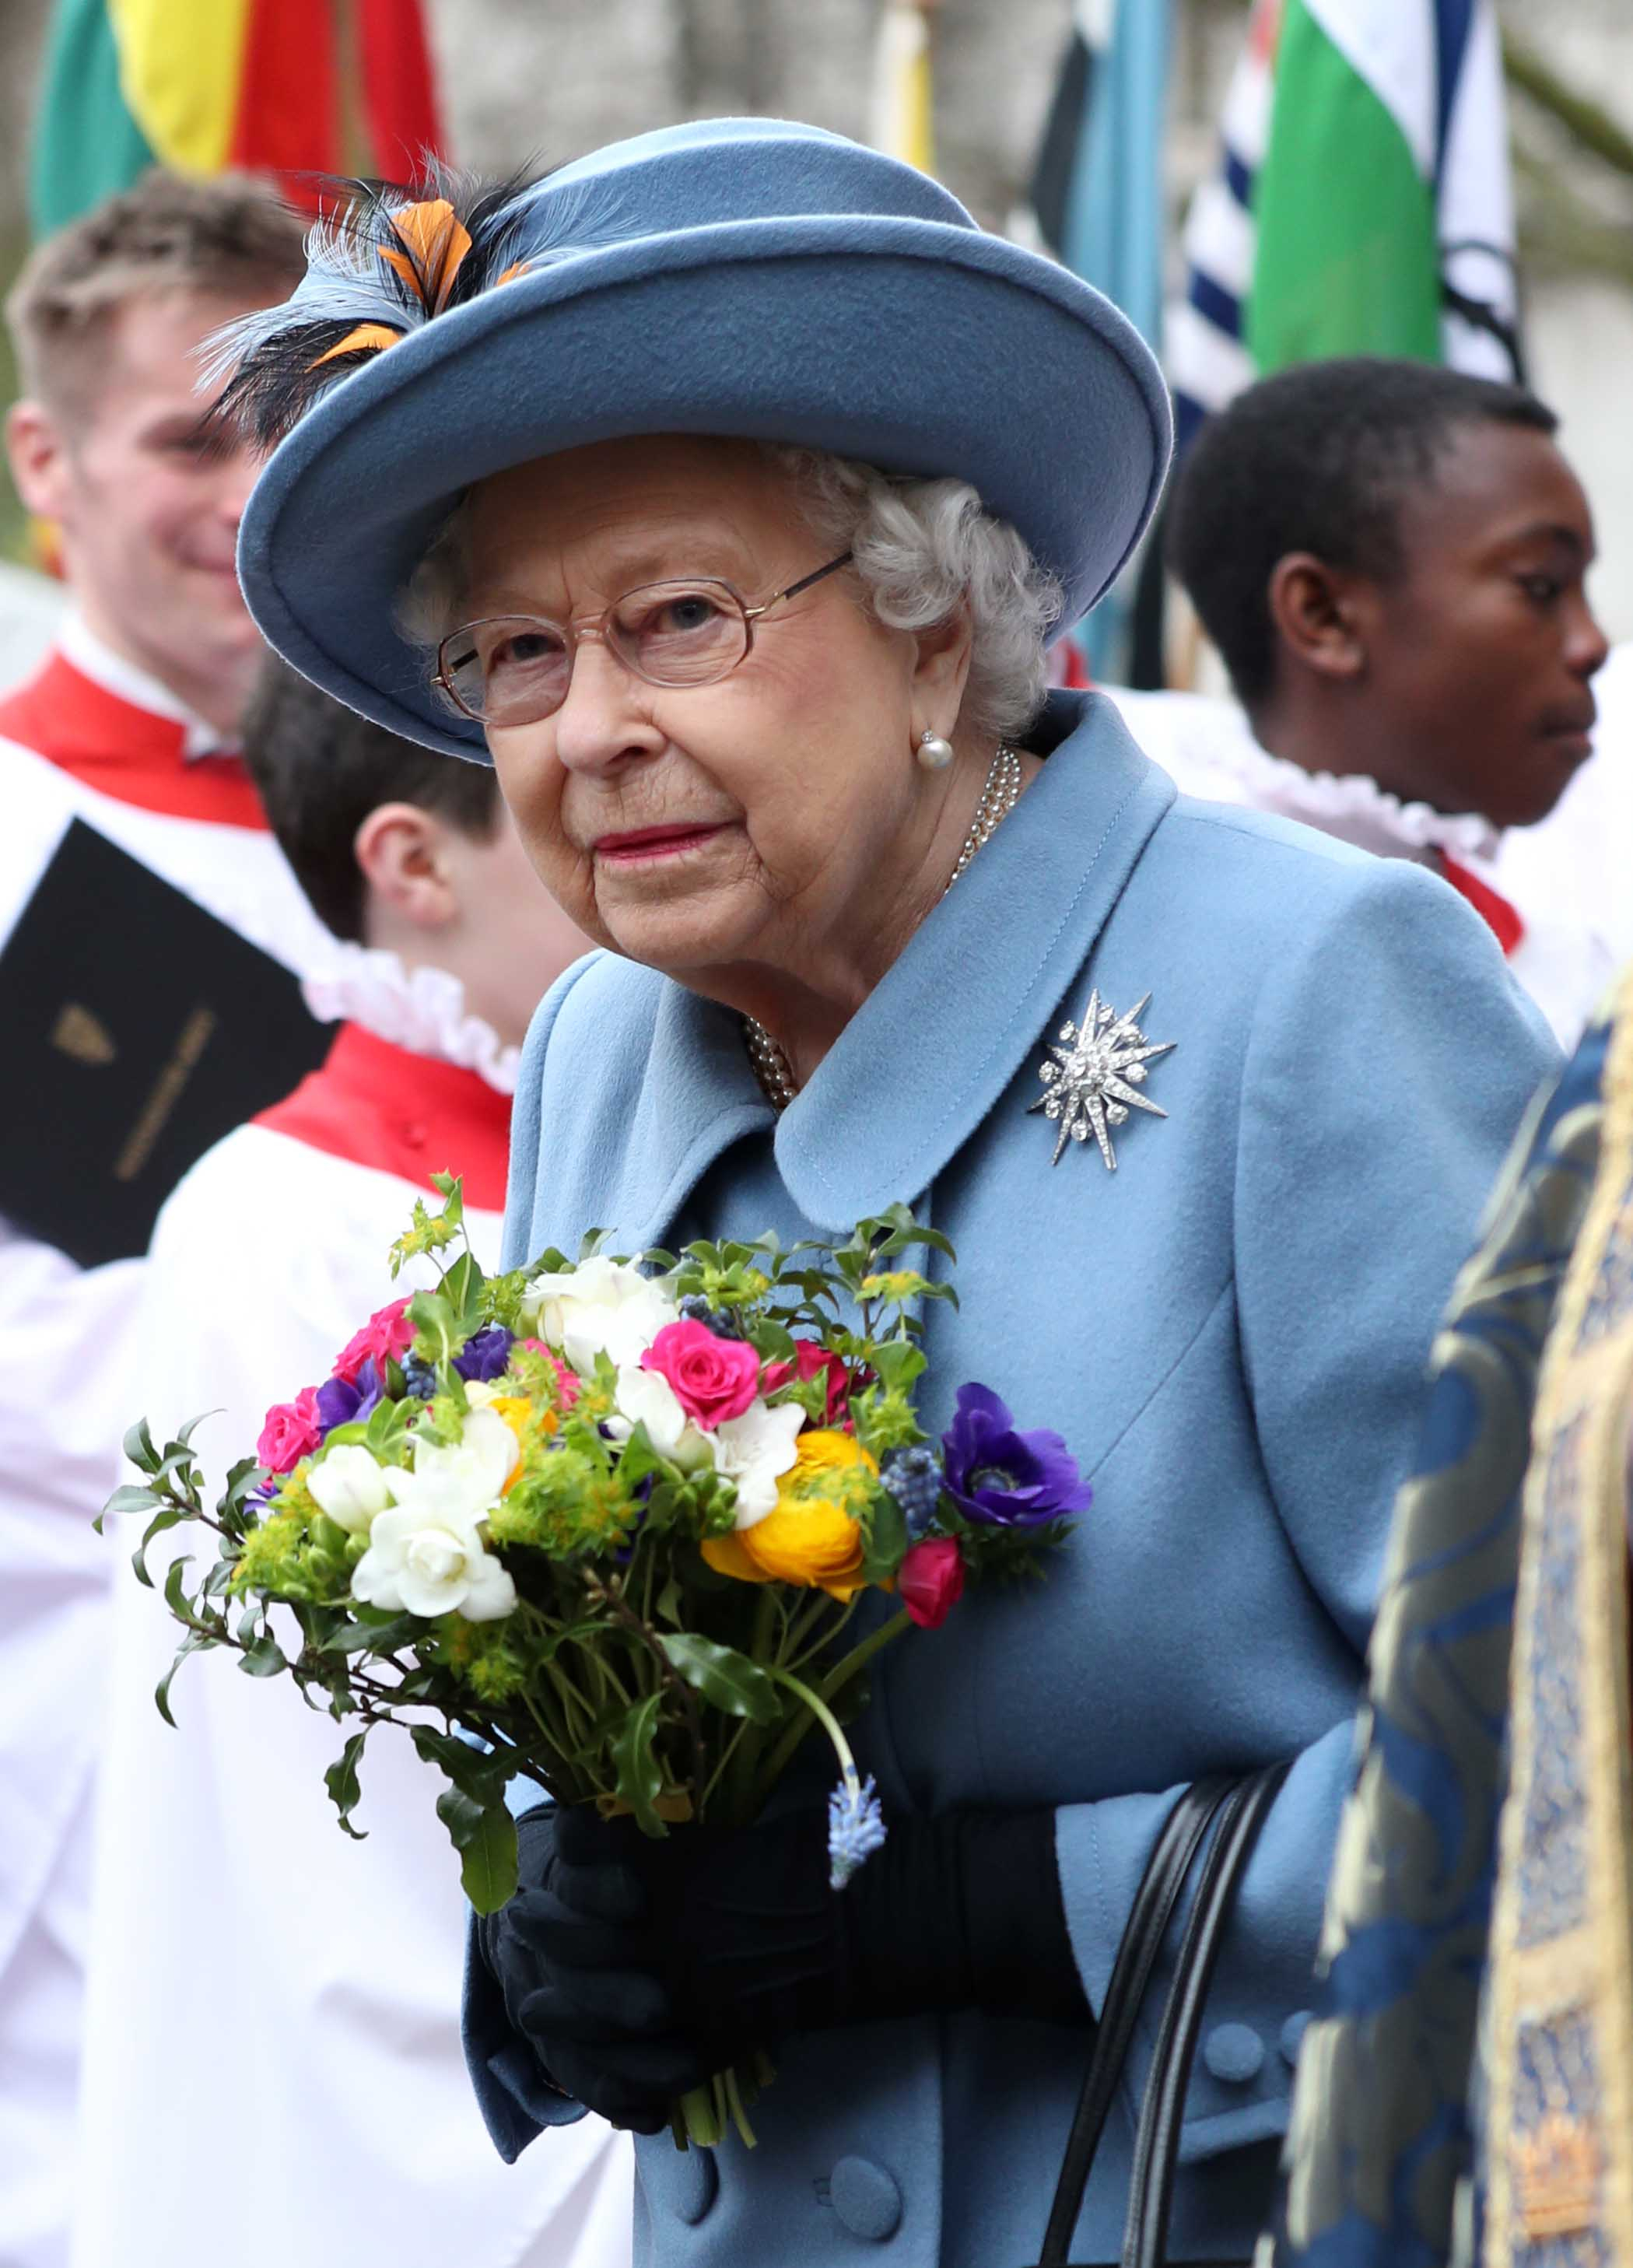  Многие королевские события уже отложены, в том числе выставка цветов в Челси, Дерби и Роял Аскот, а также список наград ко дню рождения королевы.